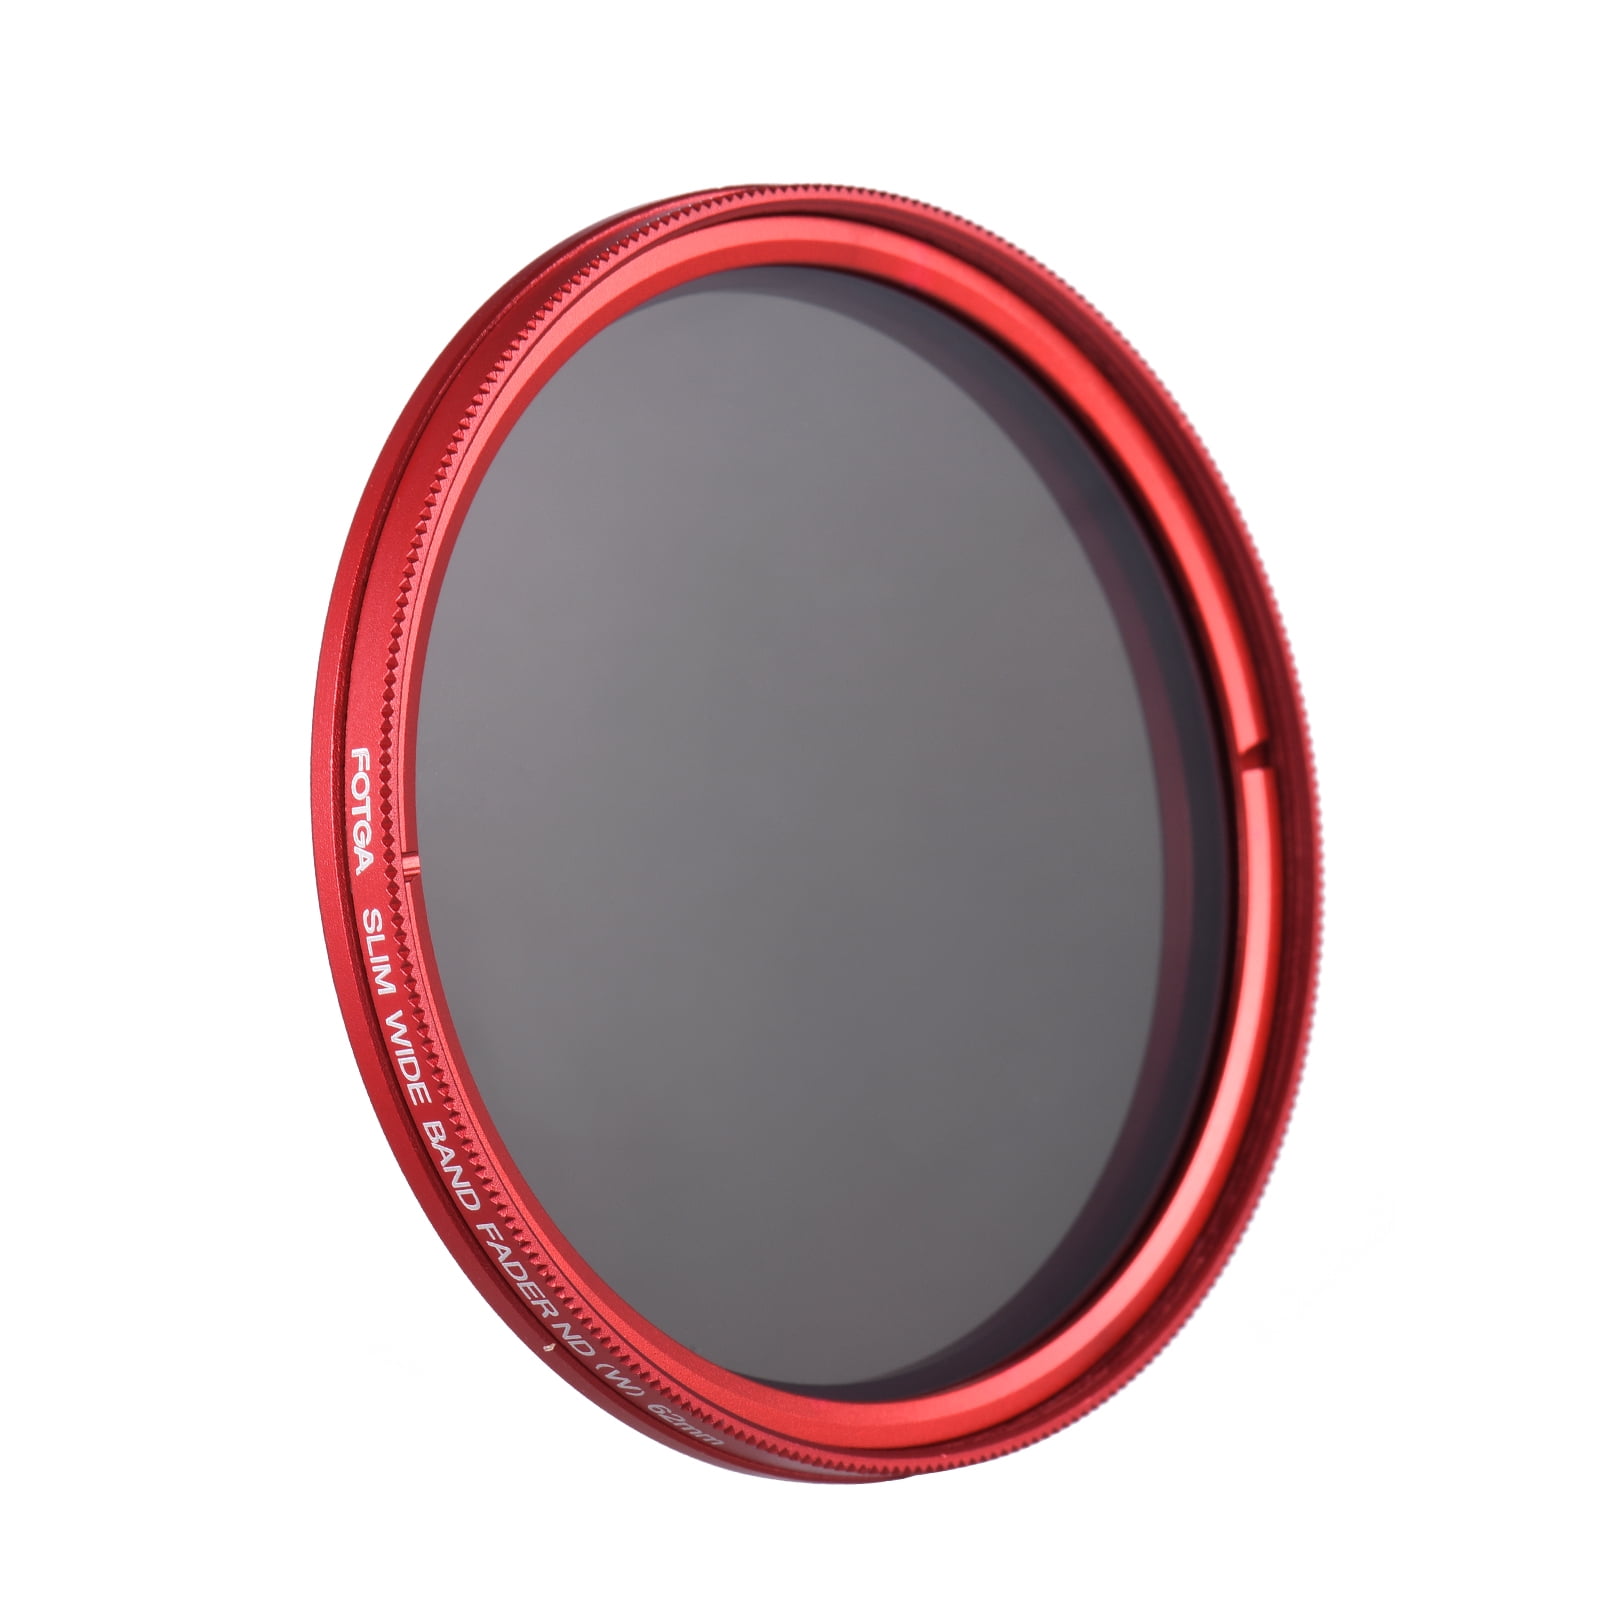 Fotga 82 mm Slim Fader Variable Adjustable ND2 to ND400 ND Neutral Density Filter for DSLR Mirrorless Cameras Lens Red